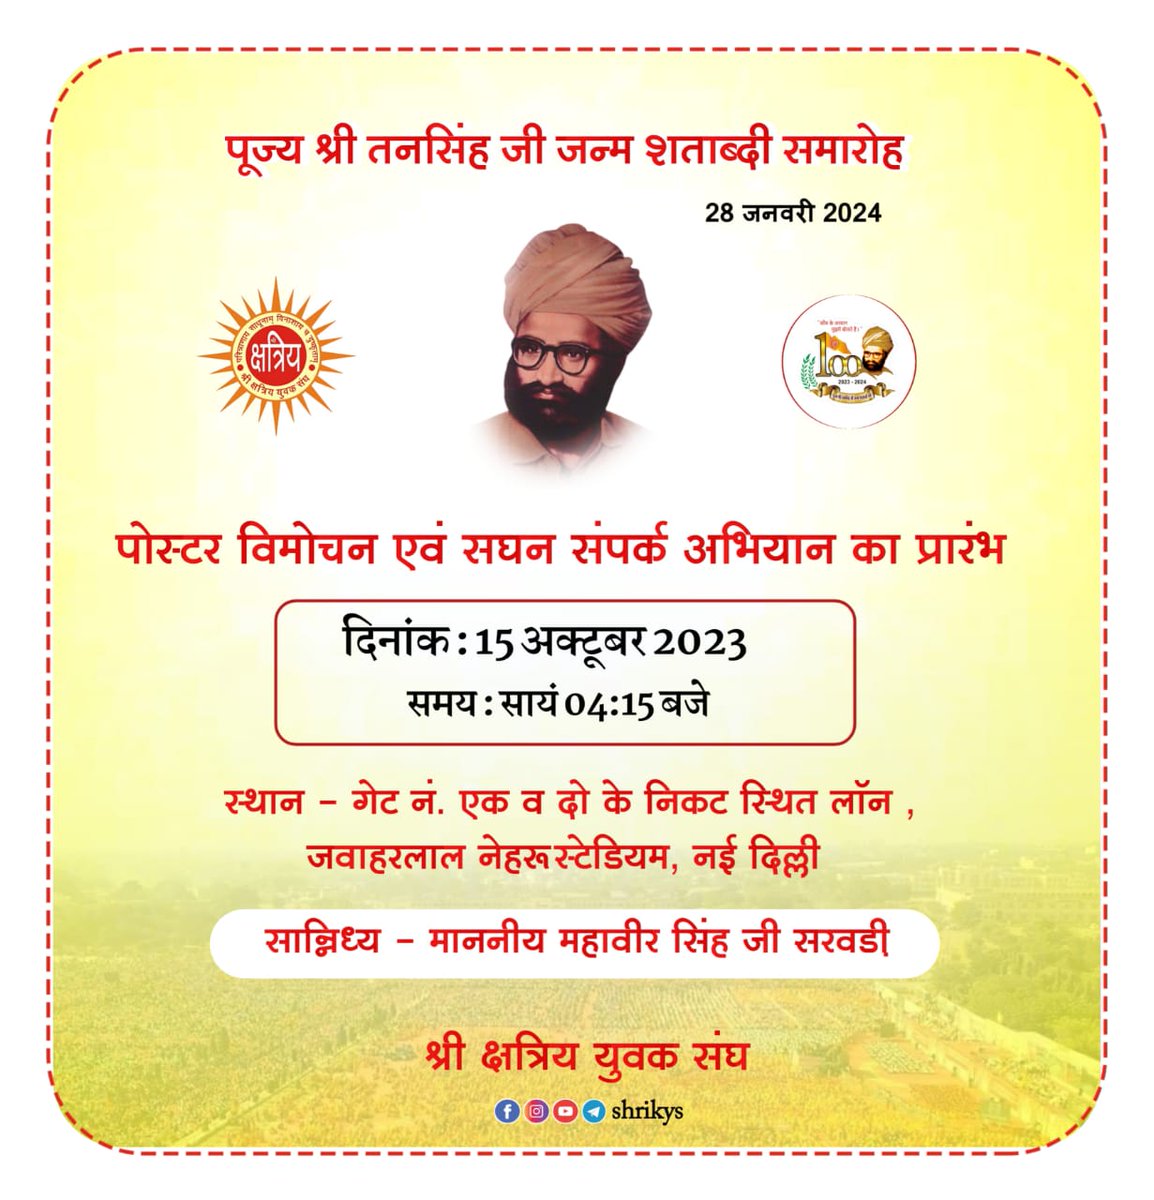 आगामी 28 जनवरी 2024 को नई दिल्ली में आयोजित पूज्य श्री तनसिंह जी जन्म शताब्दी समारोह का पोस्टर विमोचन एवं सघन संपर्क अभियान का शुभारंभ संघ के वरिष्ठ स्वयंसेवक माननीय श्री महावीर सिंह जी सरवड़ी के सान्निध्य में आगामी 15 अक्टूबर (रविवार) को नवरात्रा स्थापना के शुभ अवसर पर नई दिल्ली